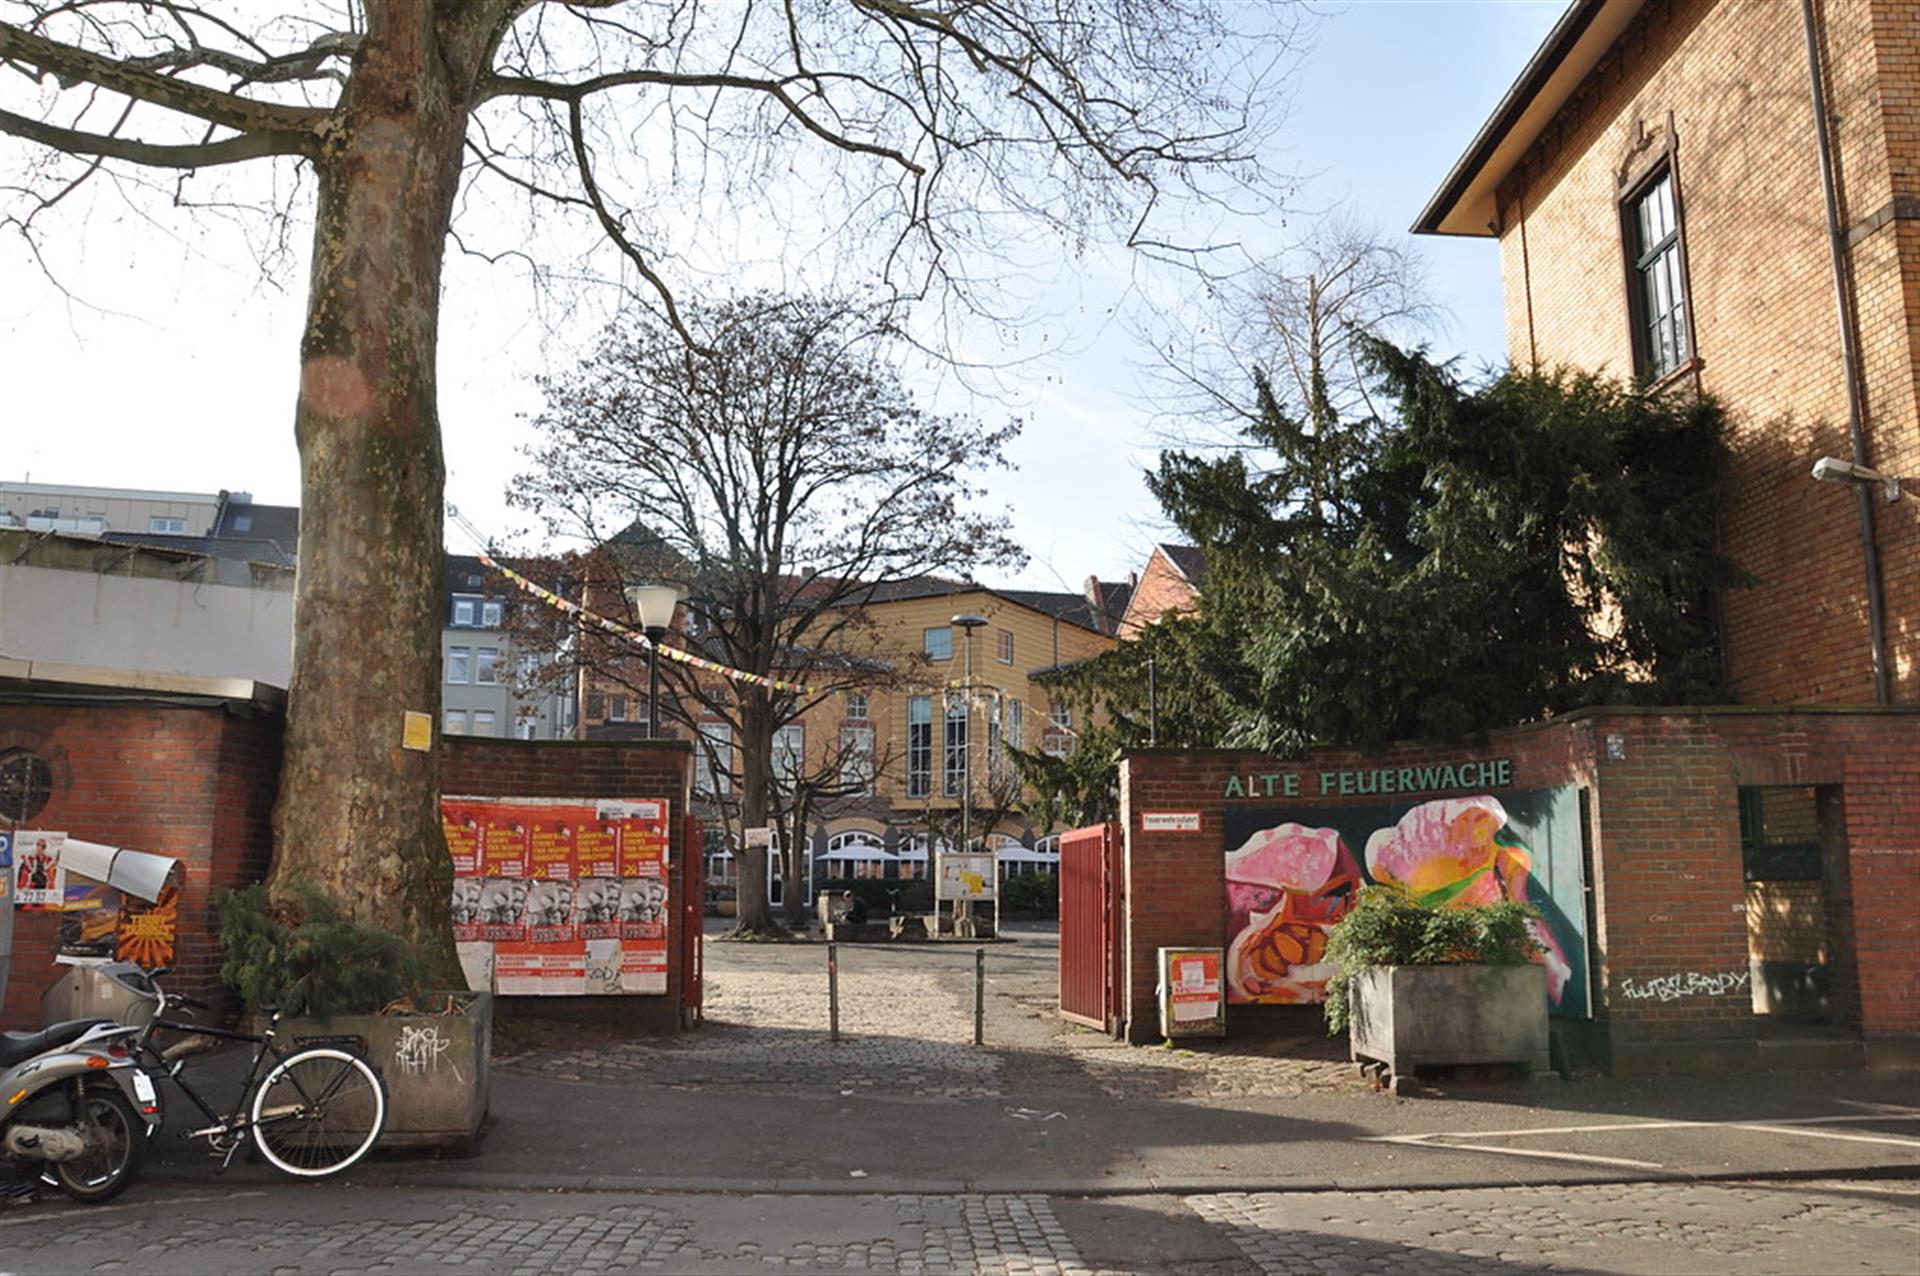 Das Bild zeigt das Bürgerzentrum Alte Feuerwache von der Melchiorstraße aus gesehen. In der Mitte des Bildes befindet sich das Tor der Feuerwache, innerhalb dessen zwei Poller stehen, da die Befahrung des Hofes mit Fahrzeugen verboten ist. Rechts neben dem Tor steht die Aufschrift "Alte Feuerwache". &copy; null